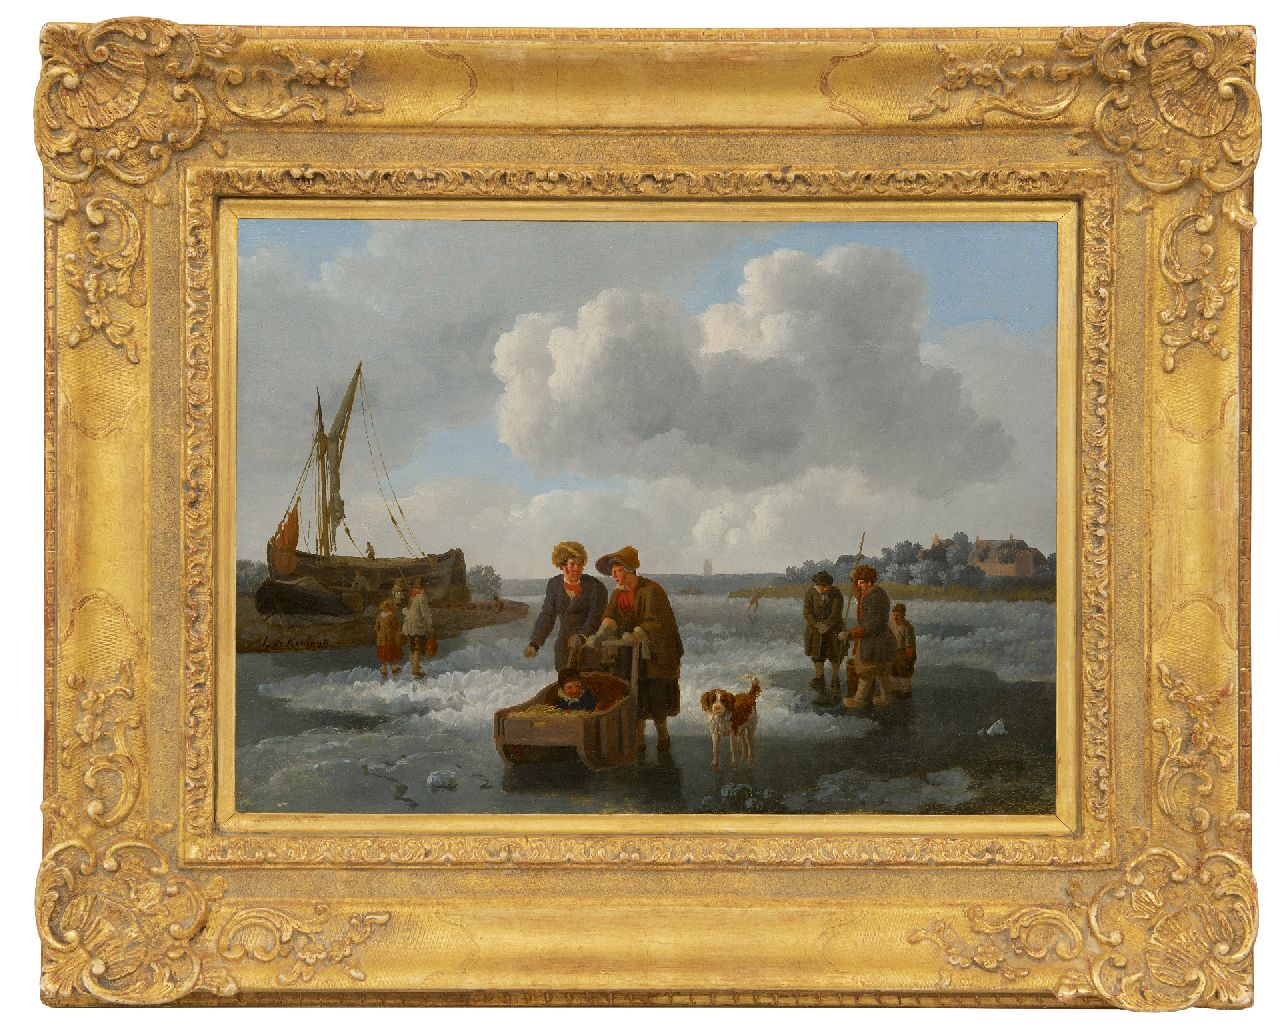 Koningh L. de | Leendert de Koningh | Schilderijen te koop aangeboden | IJsvissers en slede op een bevroren rivier, olieverf op paneel 30,1 x 42,0 cm, gesigneerd links van het midden